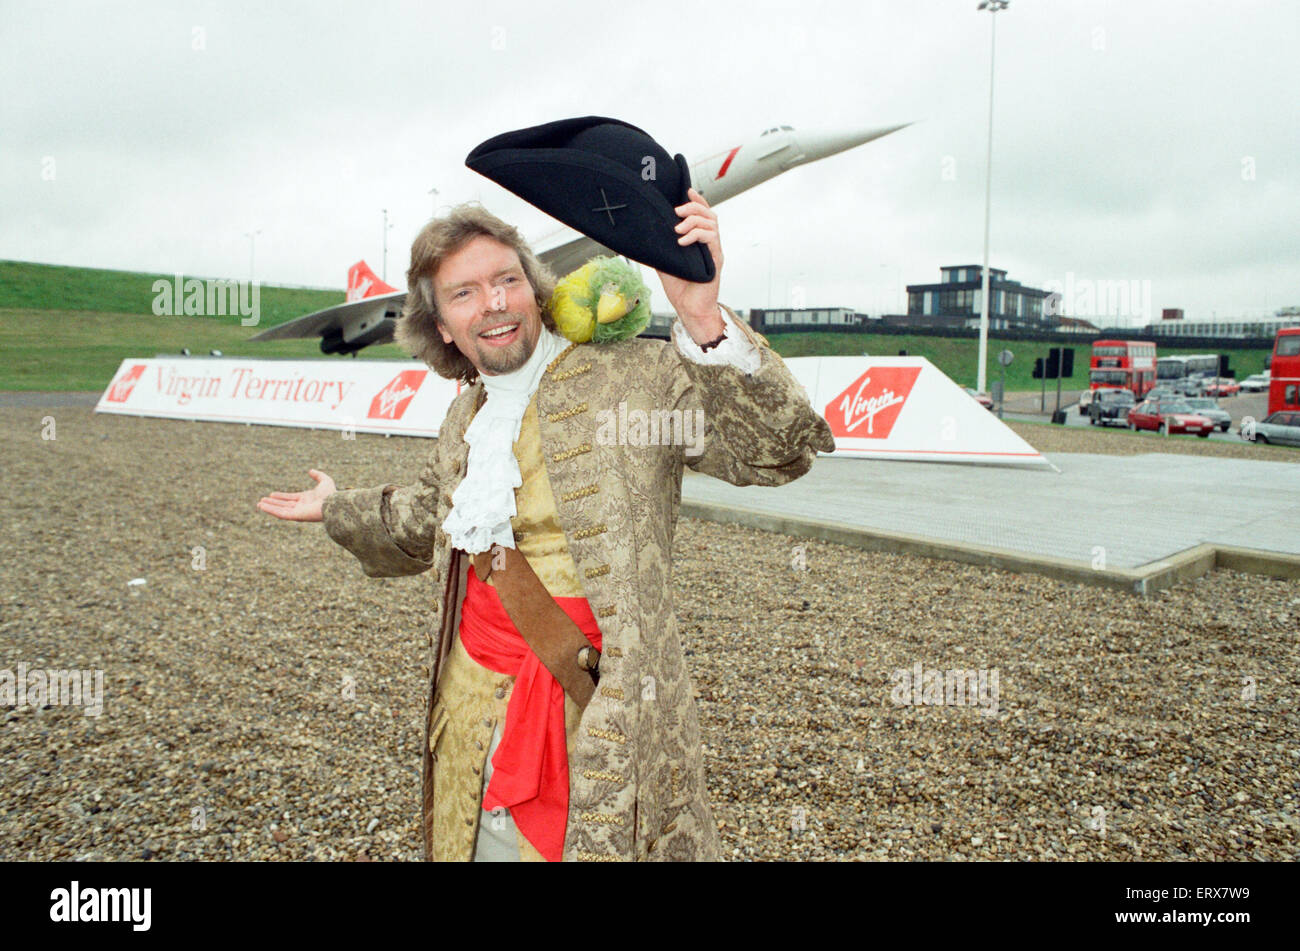 Richard Branson gesehen hier am Eingang des Tunnels führt zu den Terminals des Heathrow verkleidet als Pirat, am Tag der ersten Virgin Airways Flug am Flughafen Heathrow ankam. Branson entführt das British Airways Concorde-Modell, das am Eingang t steht Stockfoto